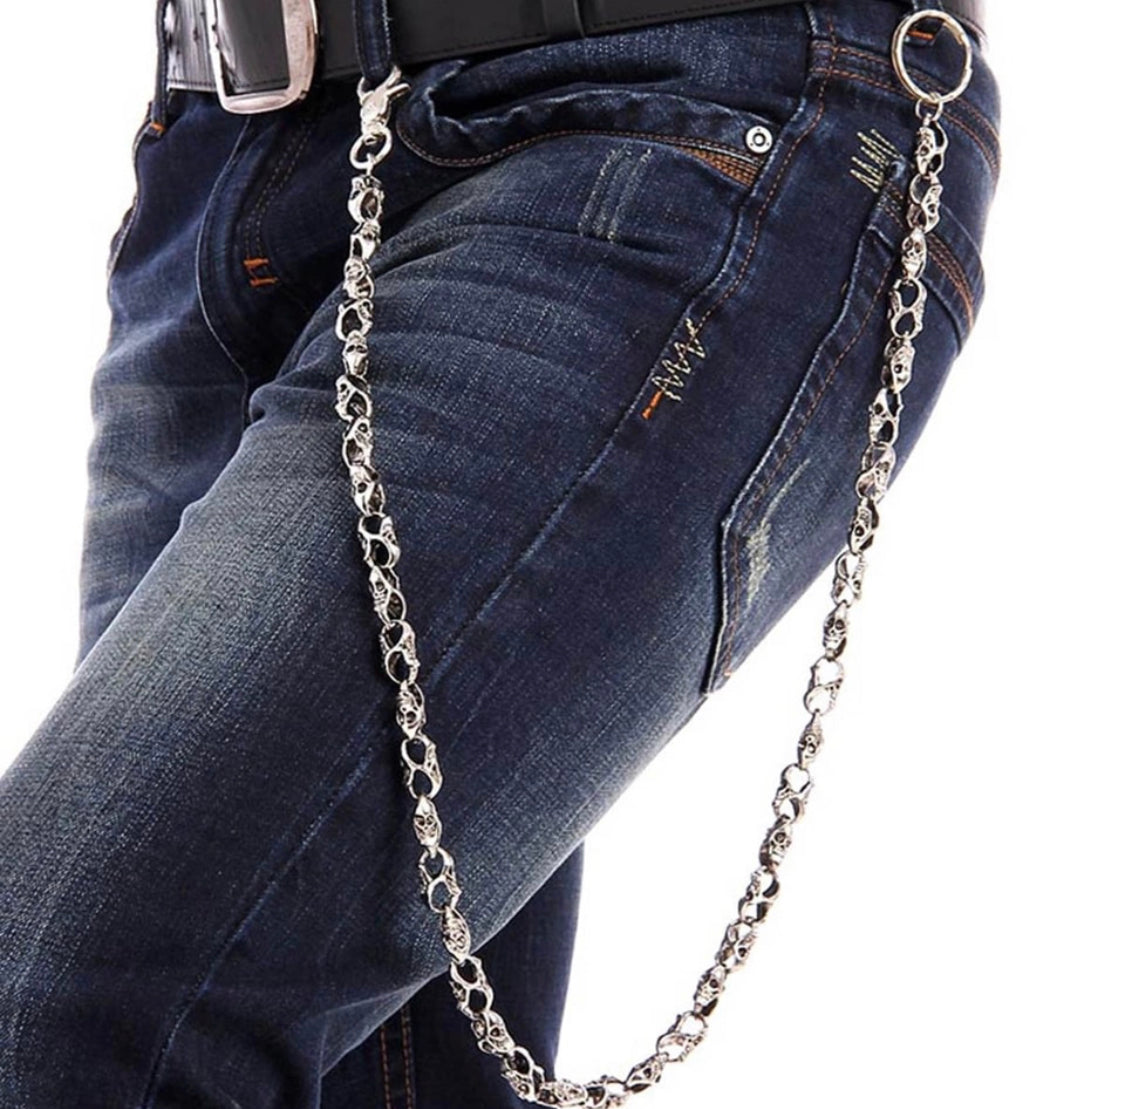 Biker Jewelry  Rings Bracelets Earrings Necklaces Pendants Wallet Hip  Chains Steel